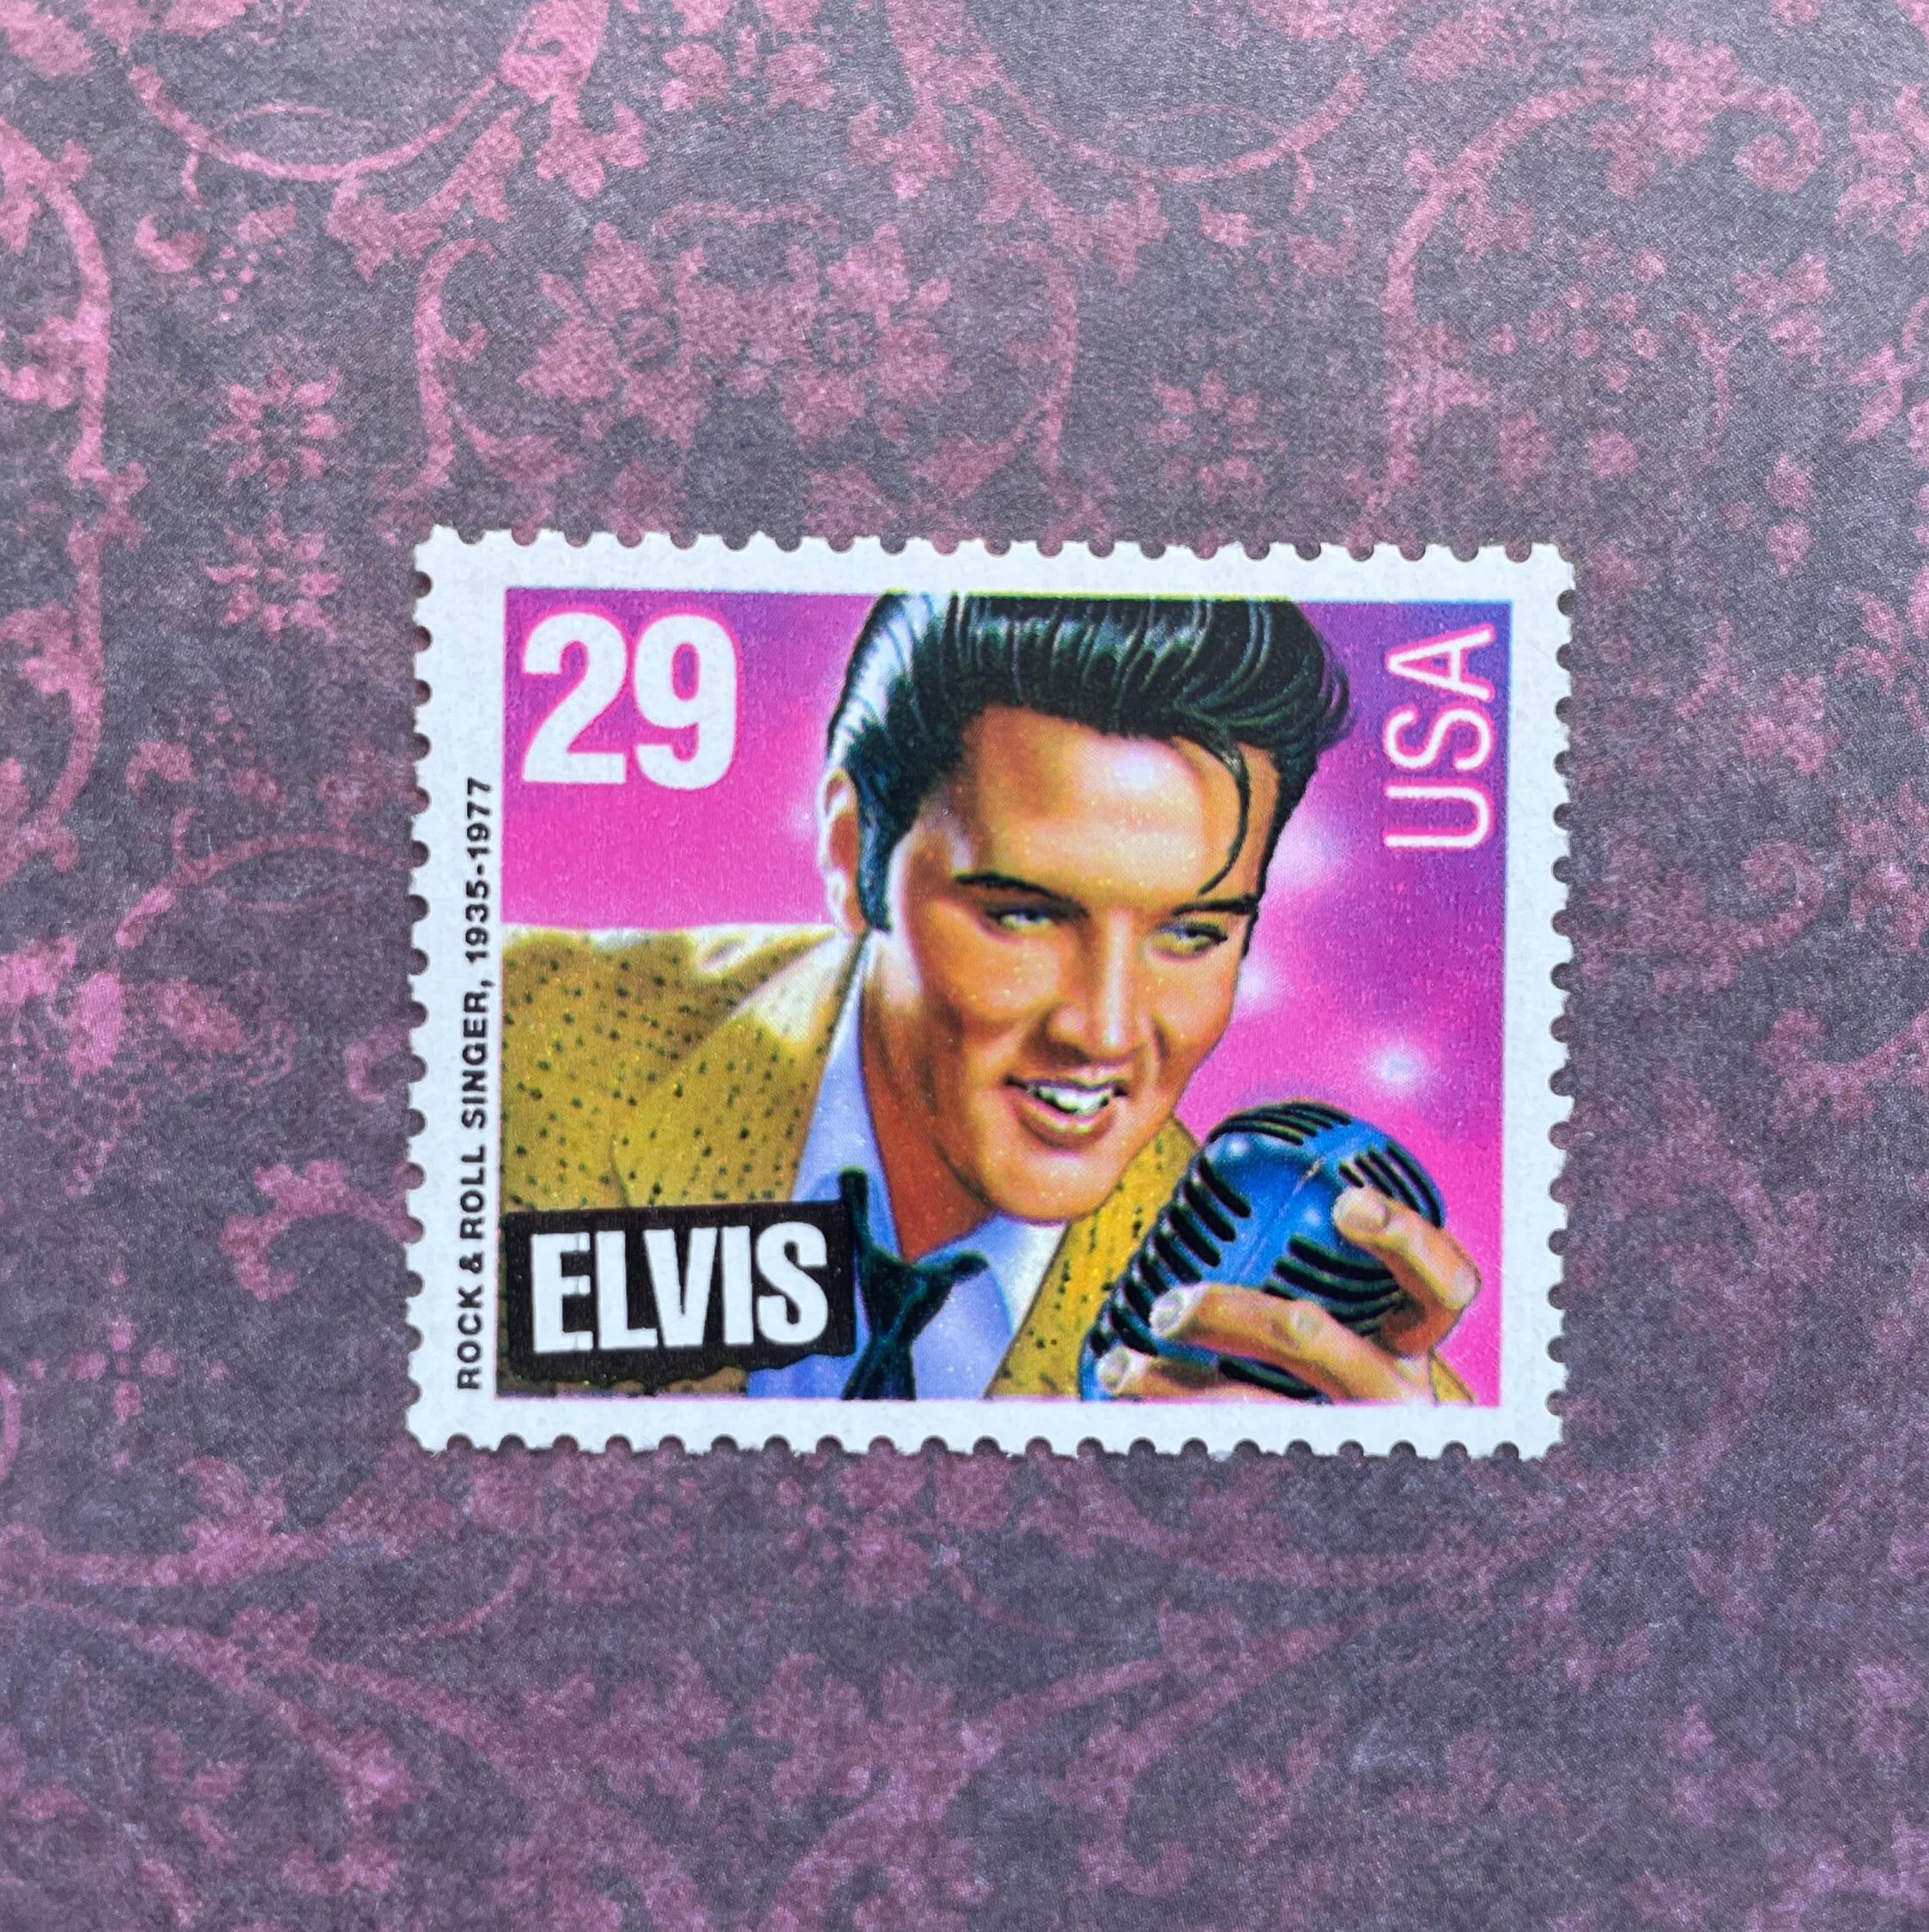 Elvis Presley エルヴィス・プレスリー 切手シート ロカビリー